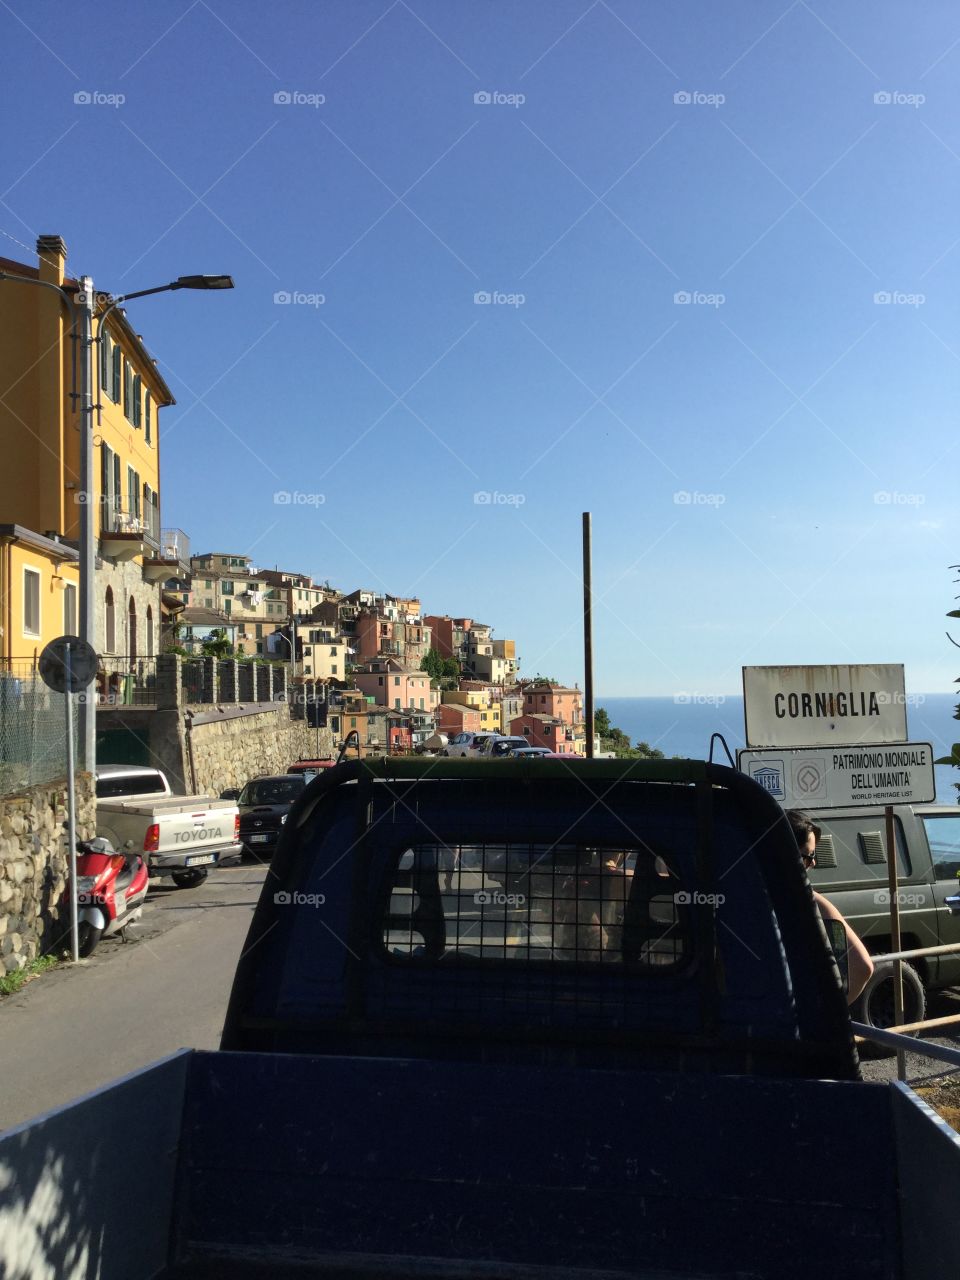 Cinque Terre, Italy, Europe, Coastal Town